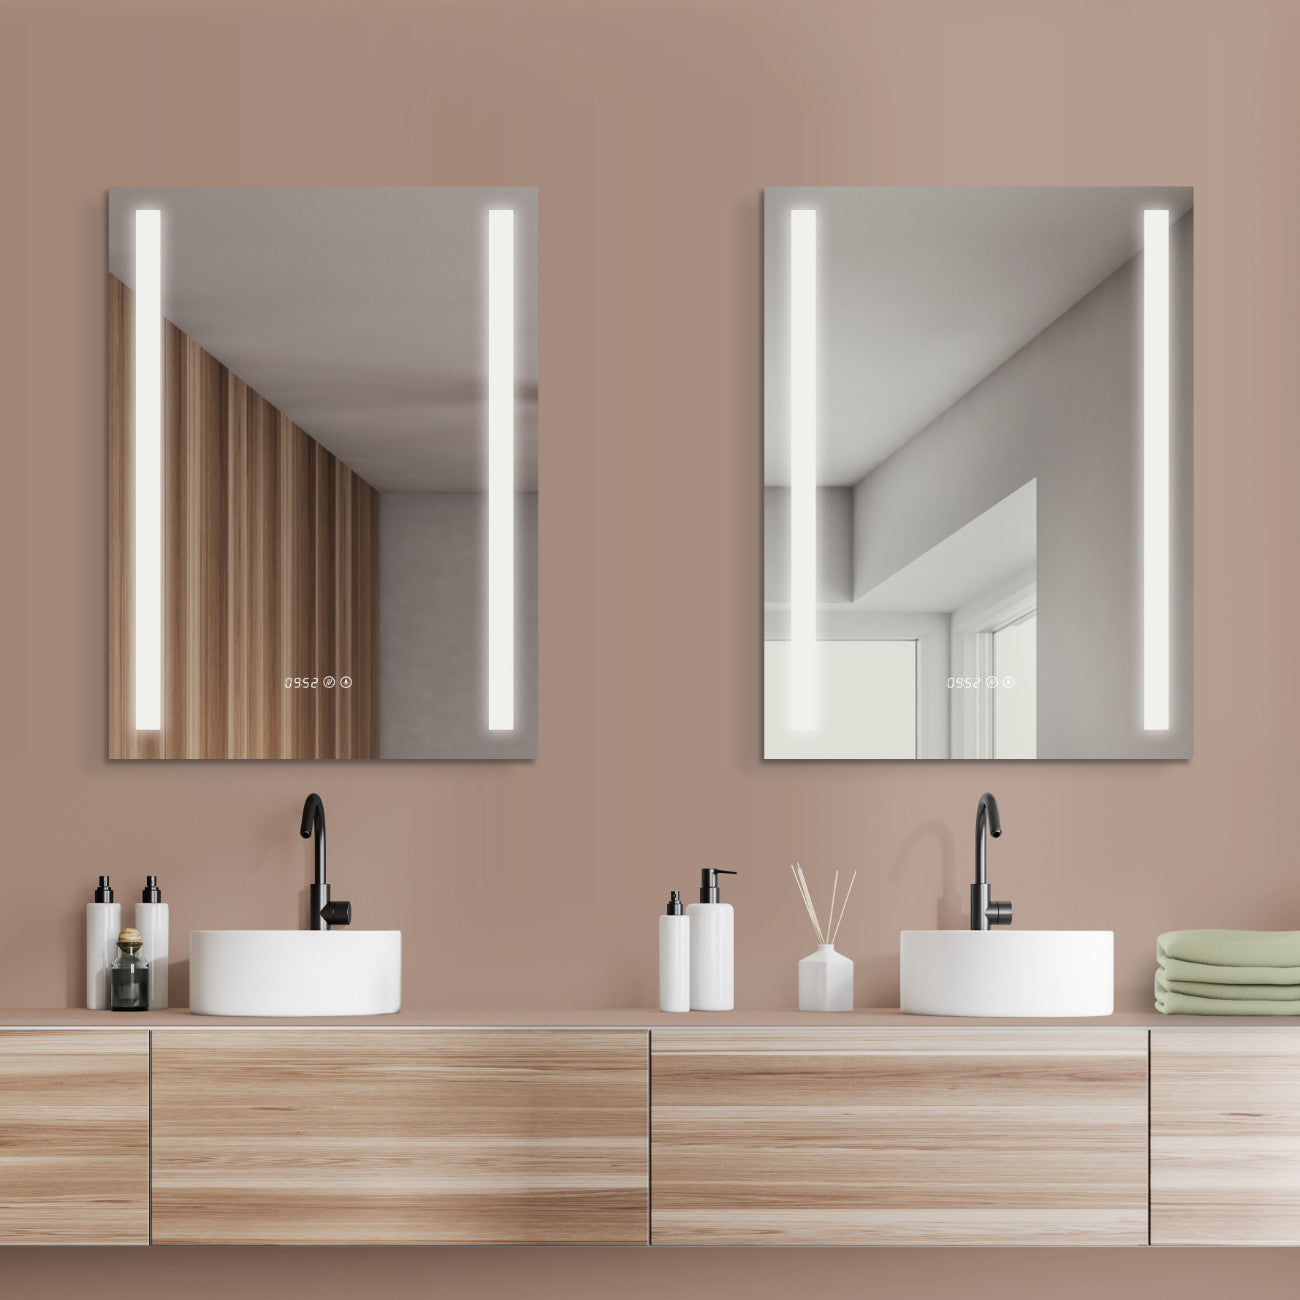 Design-Badspiegel mit Beleuchtung, Antibeschlag-Funktion und Digital Uhr